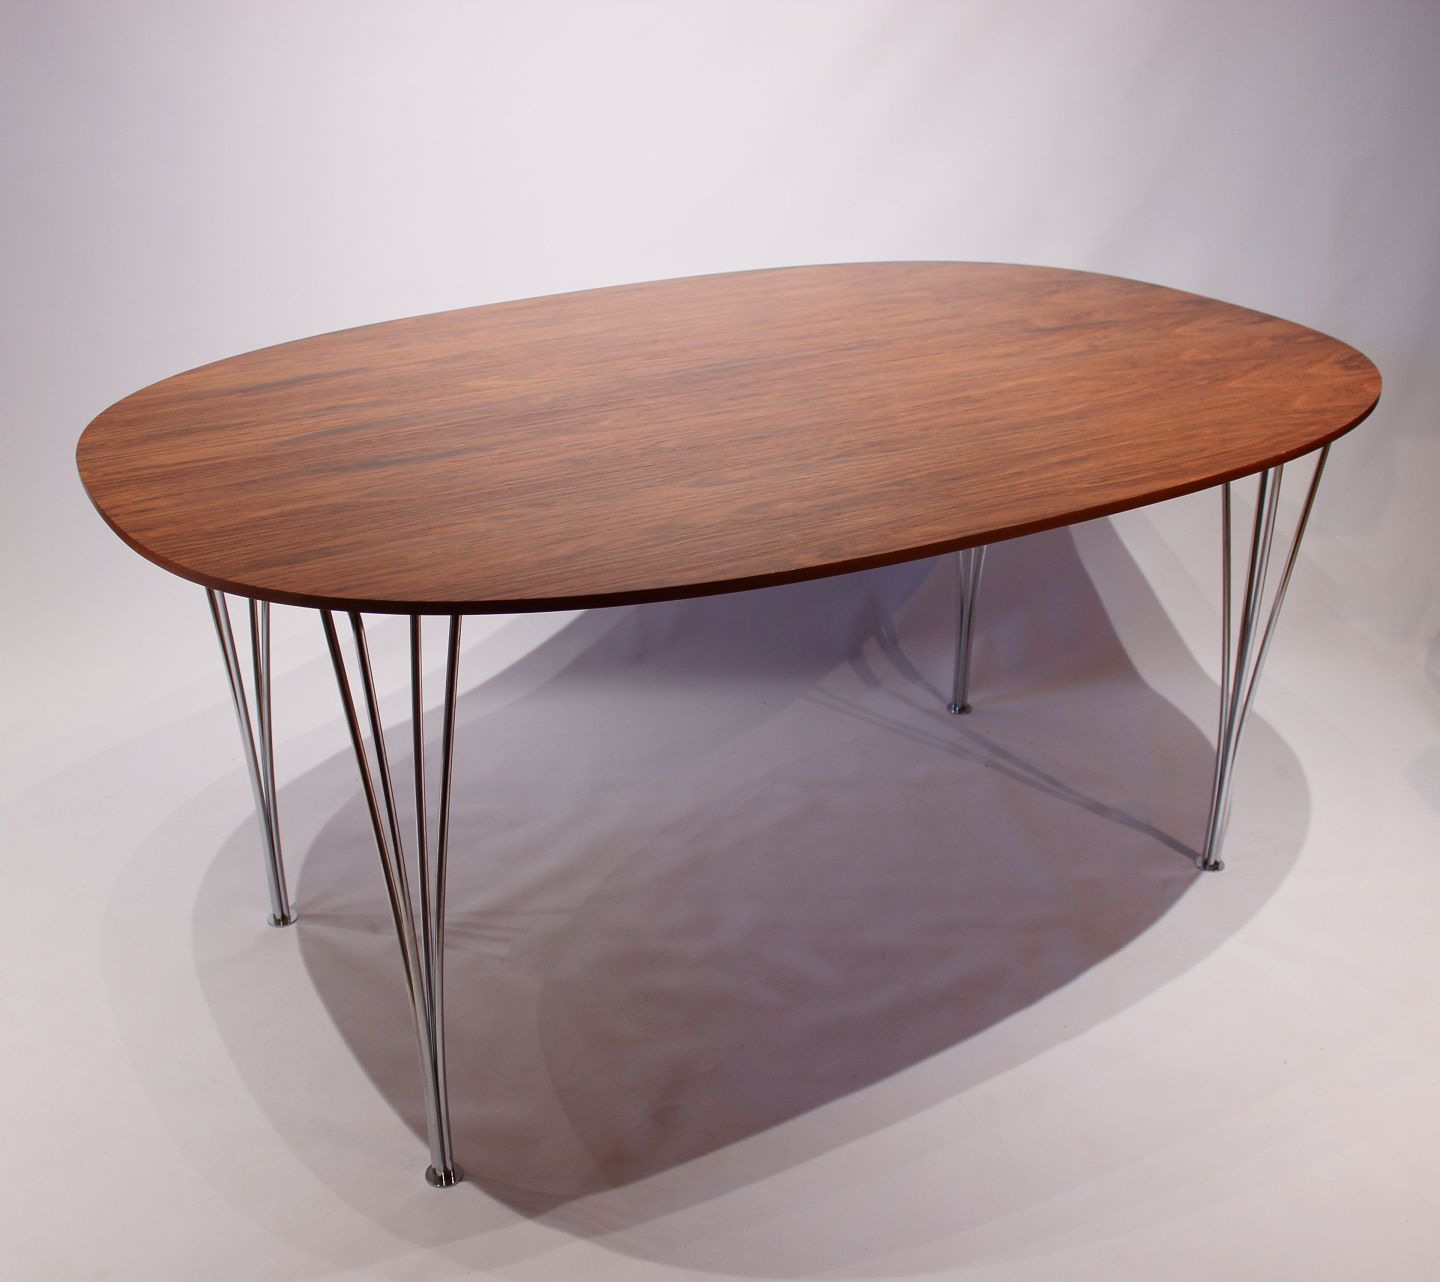 WorldAntique.net - Super Ellipse Table in Rosewood by Piet Hein, Arne Jacobsen and Mathsson. * 5000m2